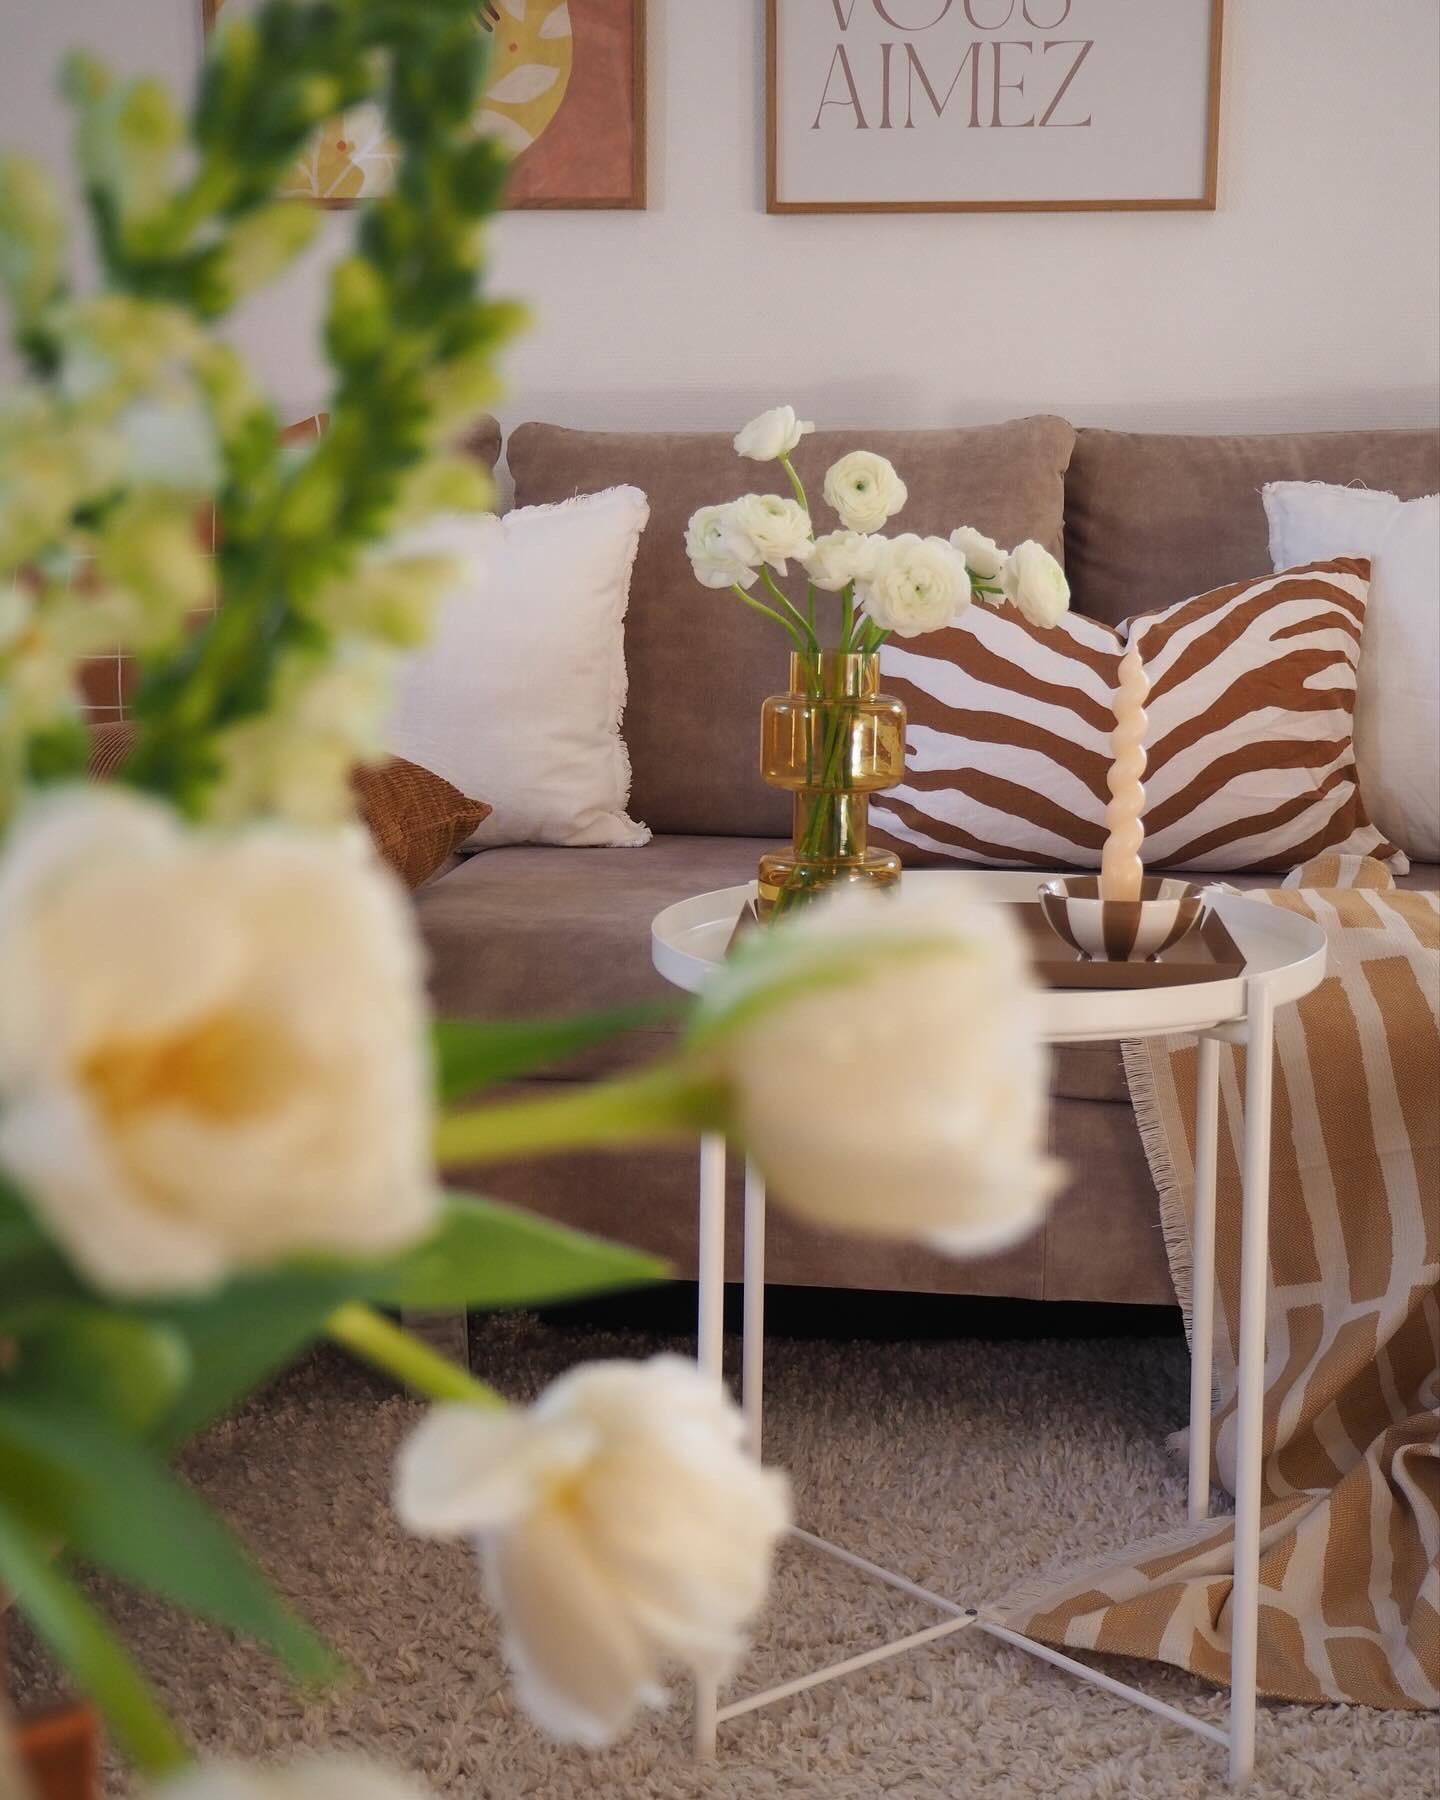 SUN.DAY #couchstyle #wohnzimmer #livingroom #flowers